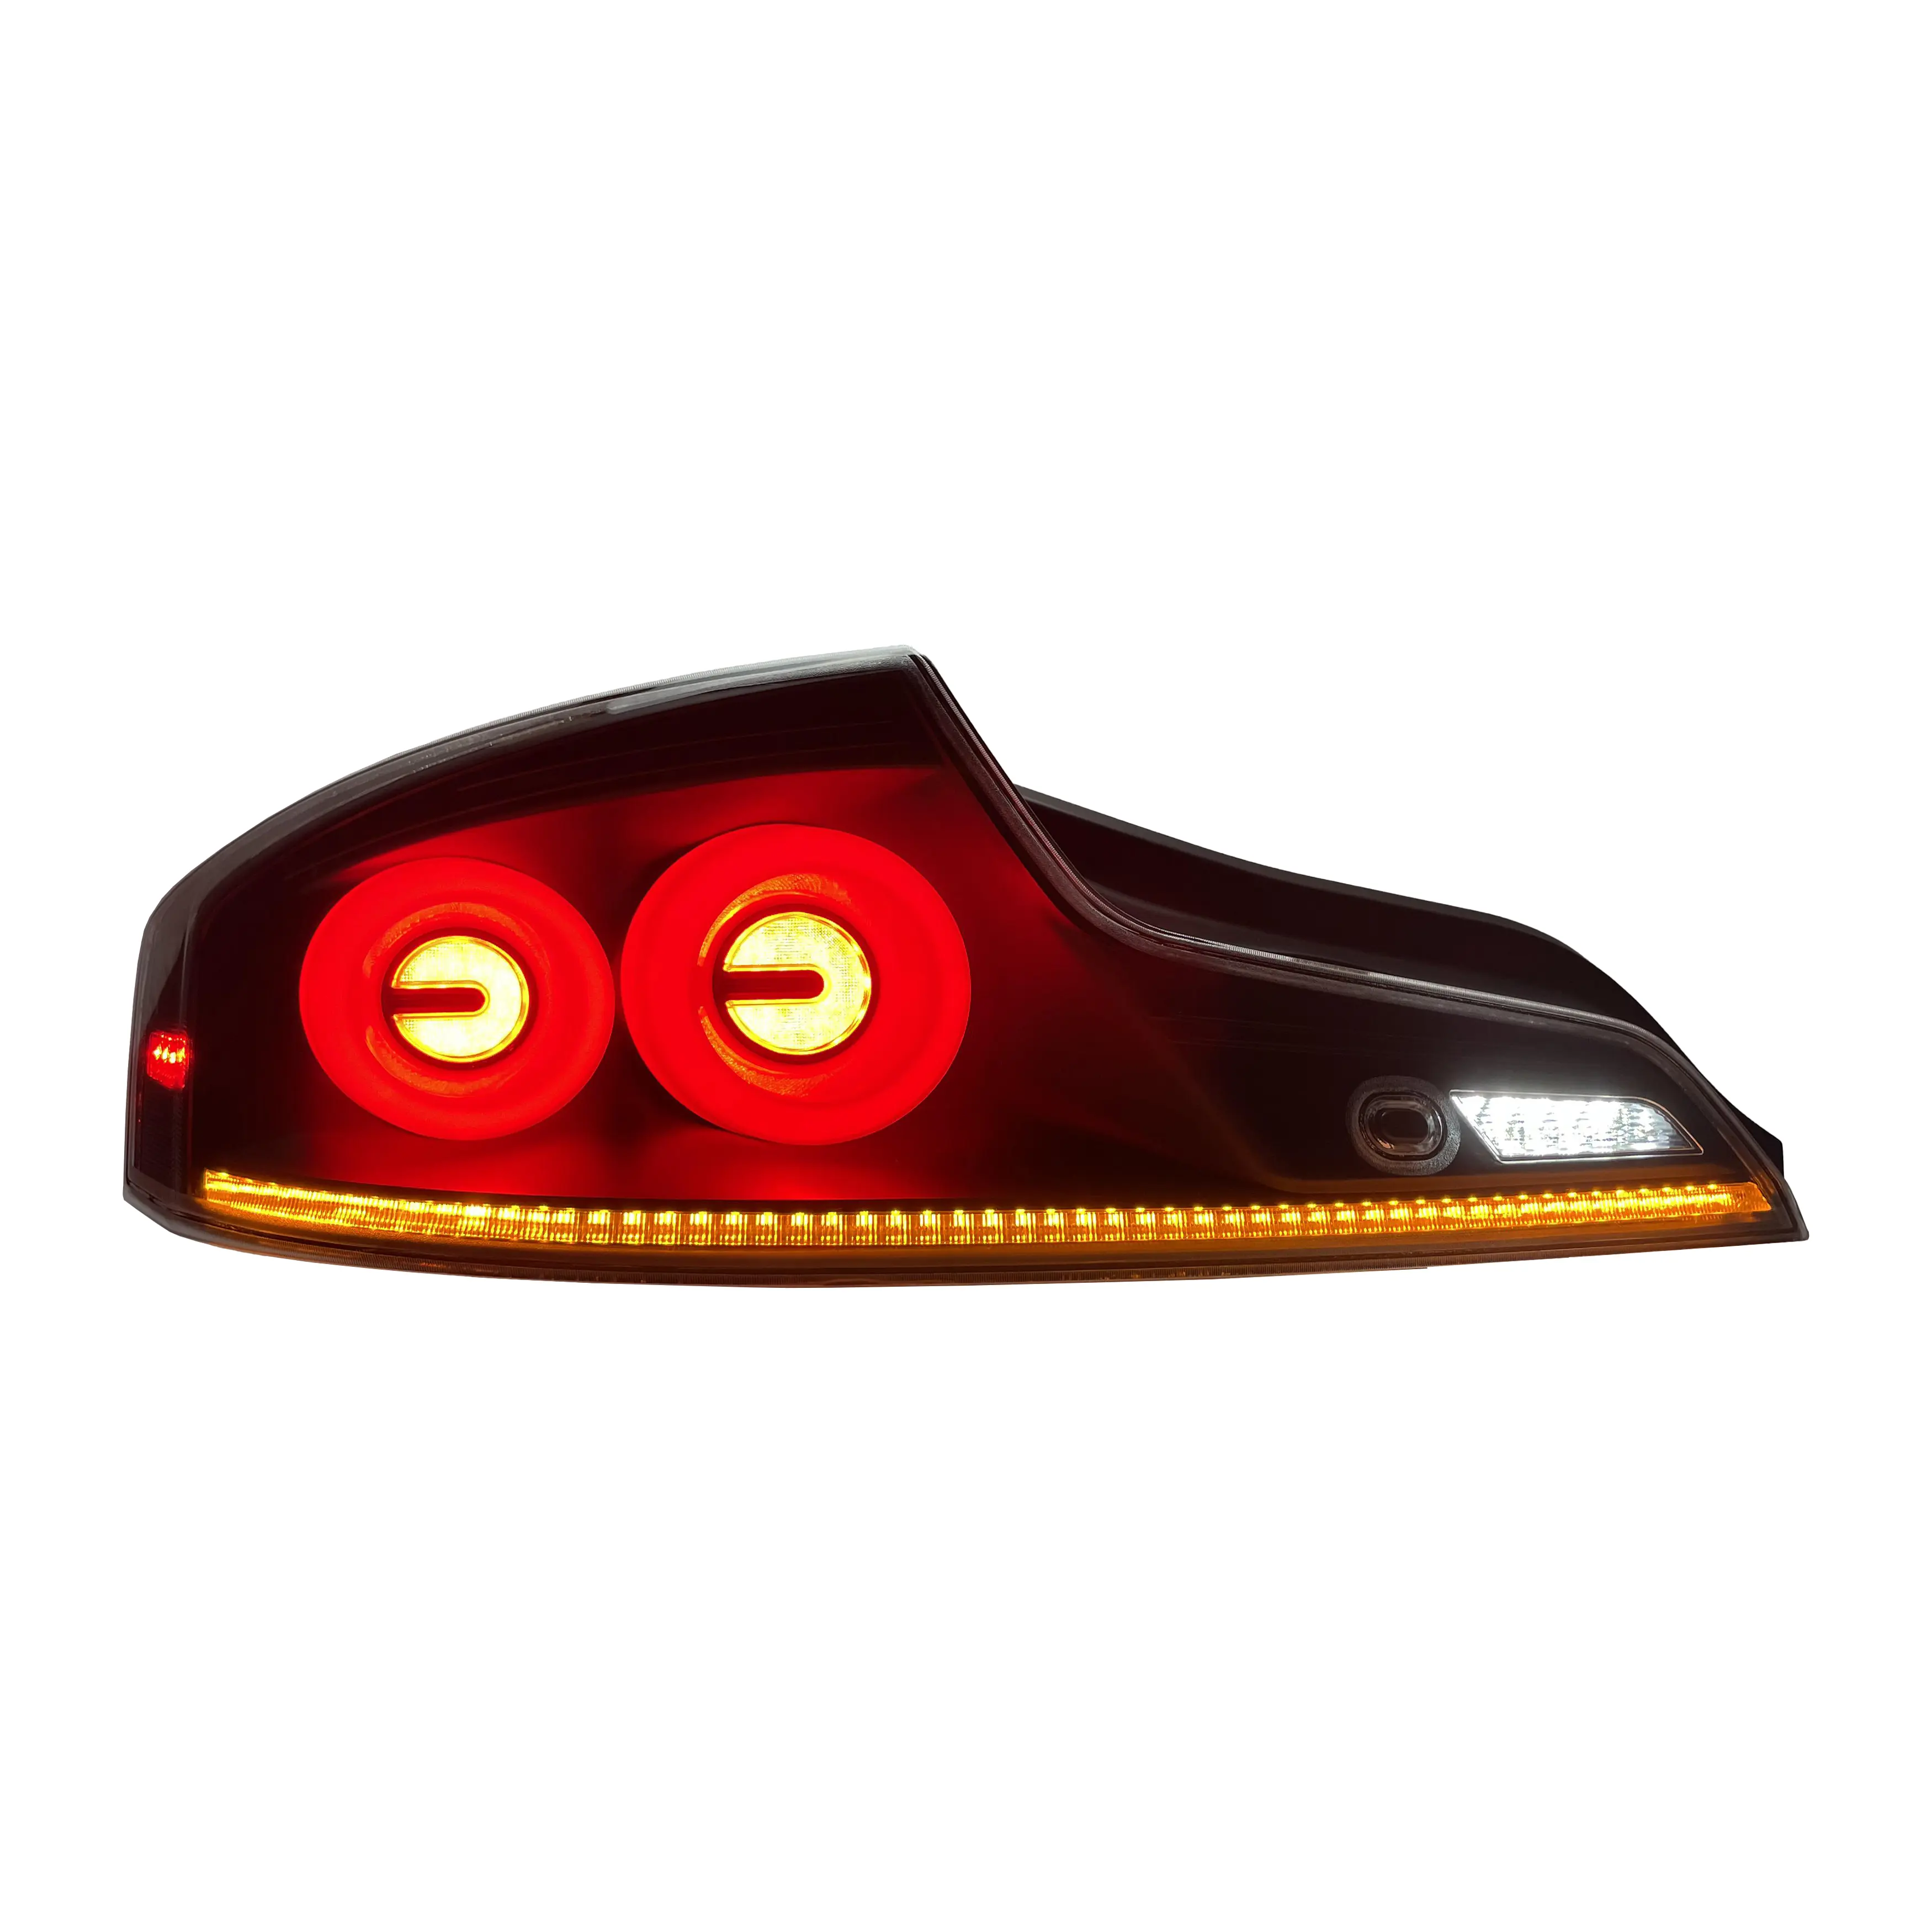 إشارة هالو متسلسلة حمراء LED عالية الجودة-Infiniti G35 Cupe (أحمر LED)